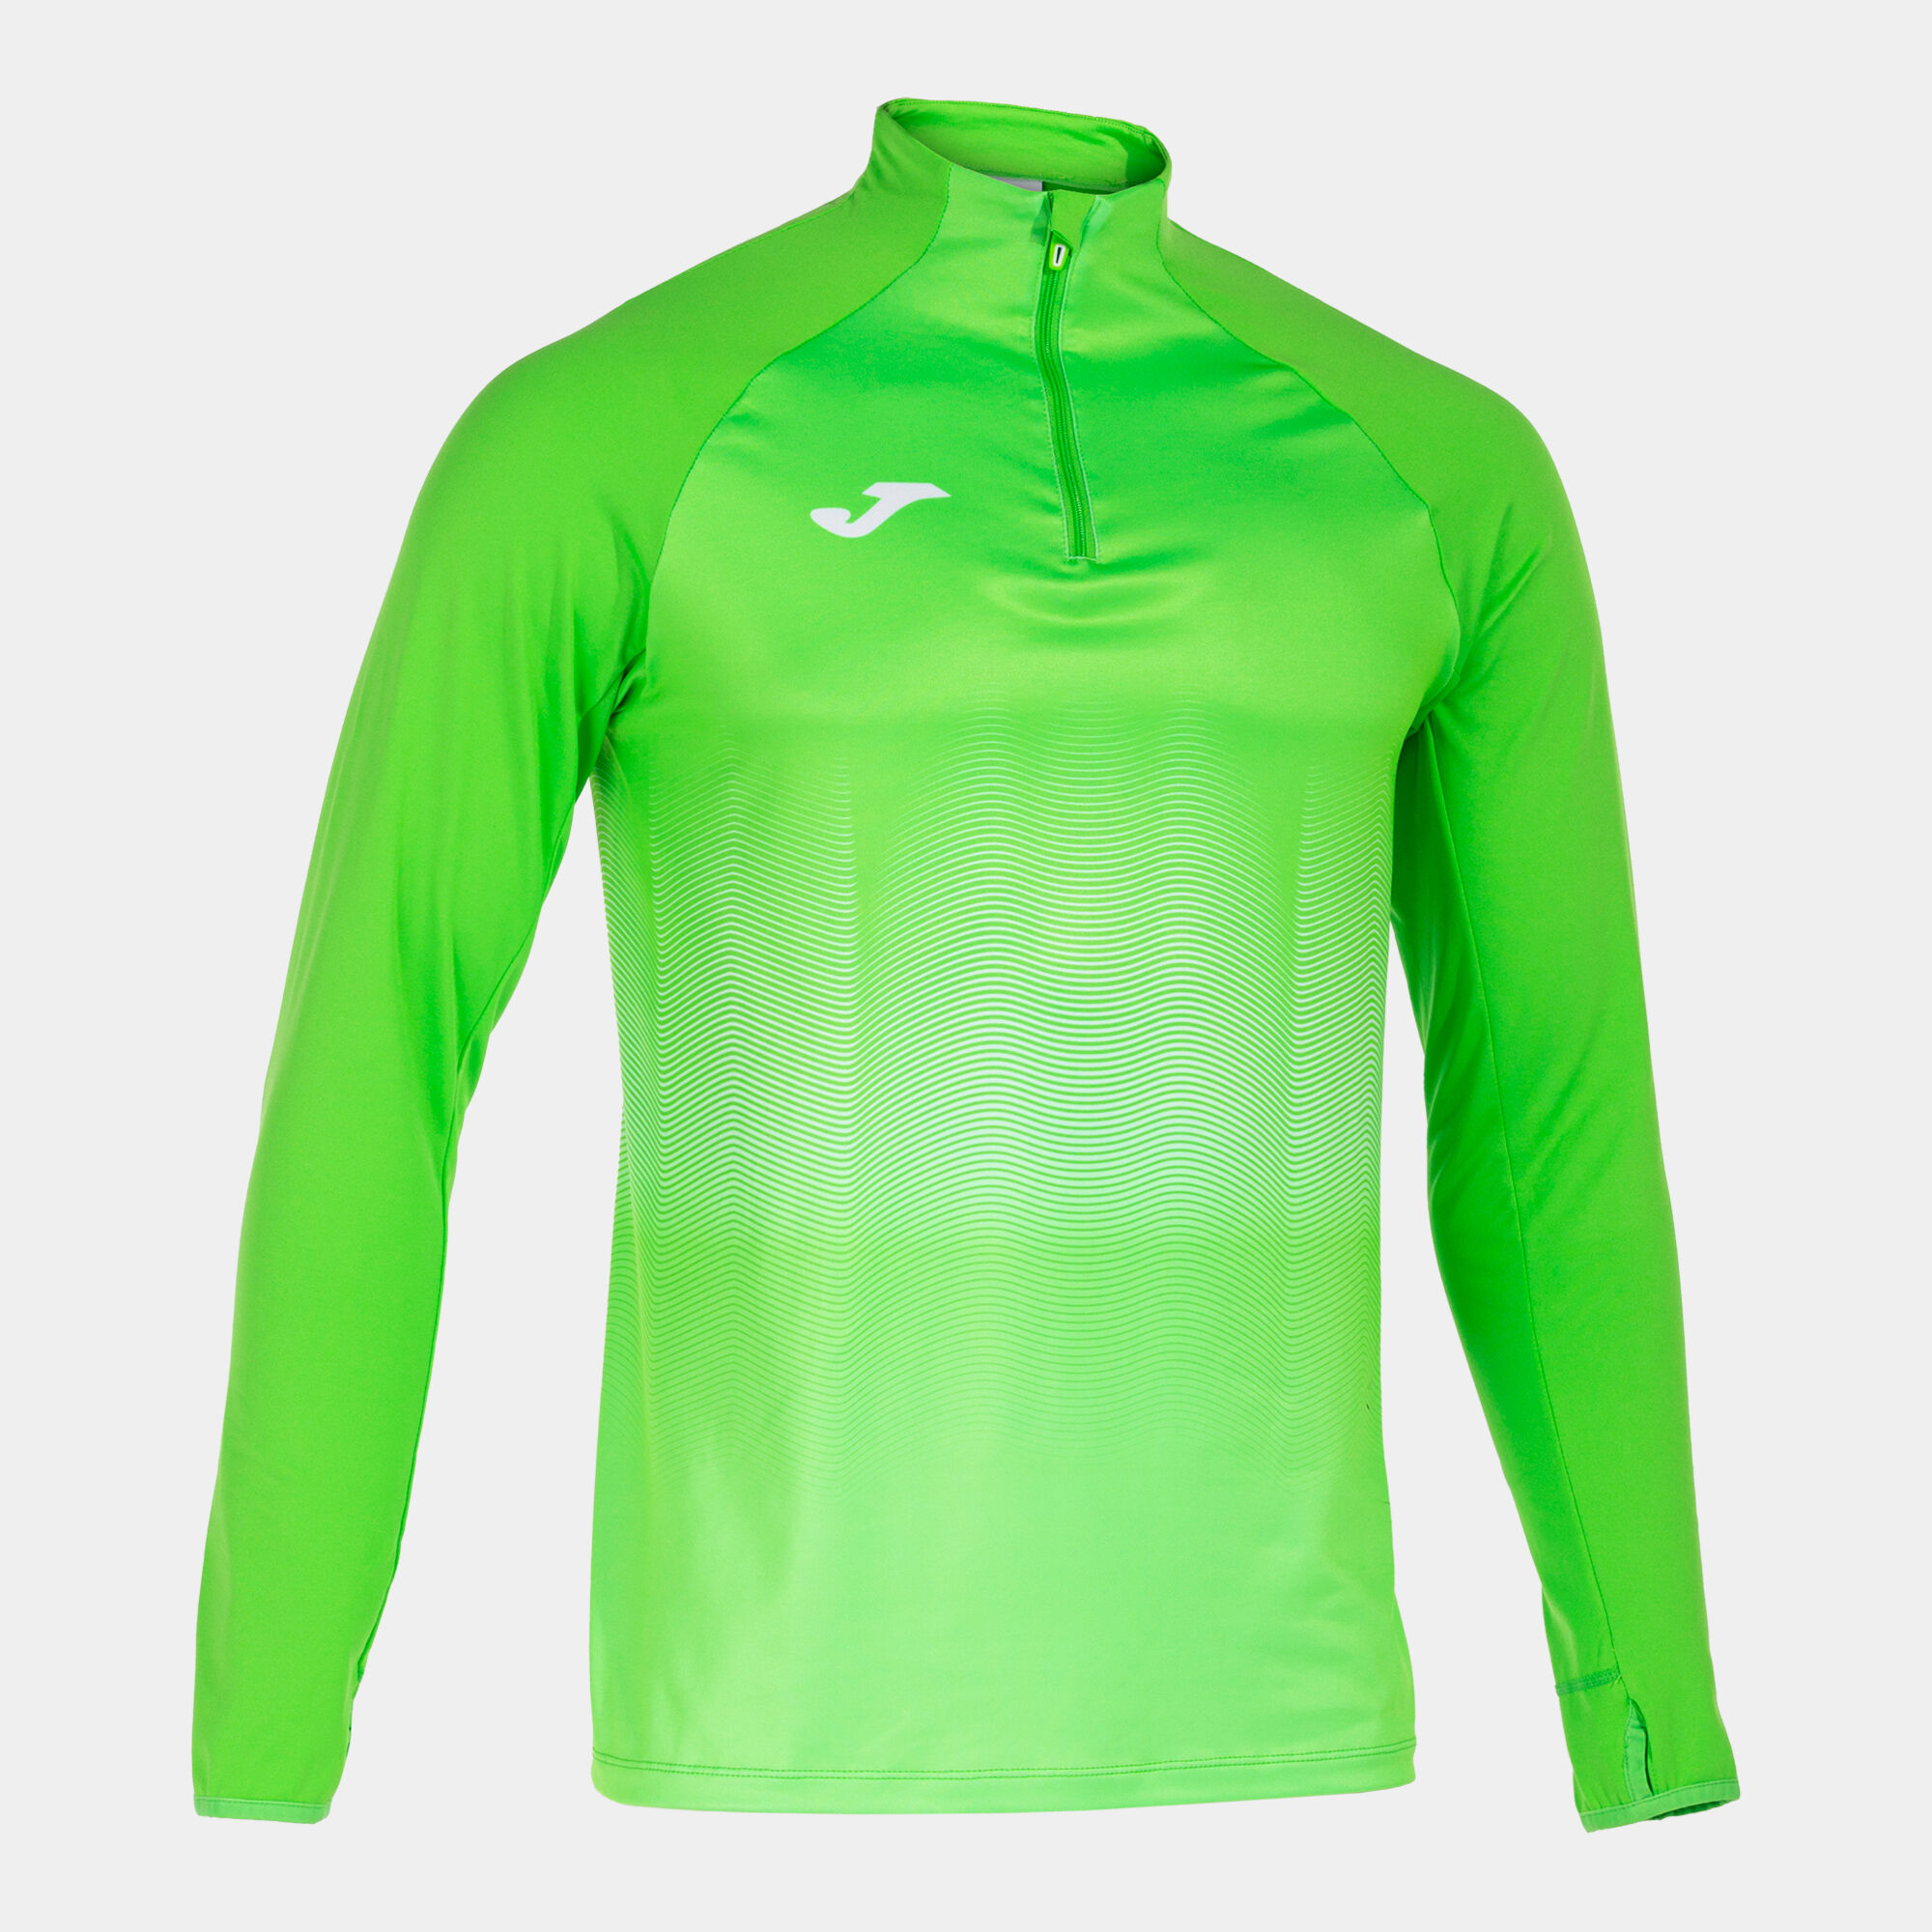 Sweat-shirt homme Elite VII vert fluo blanc